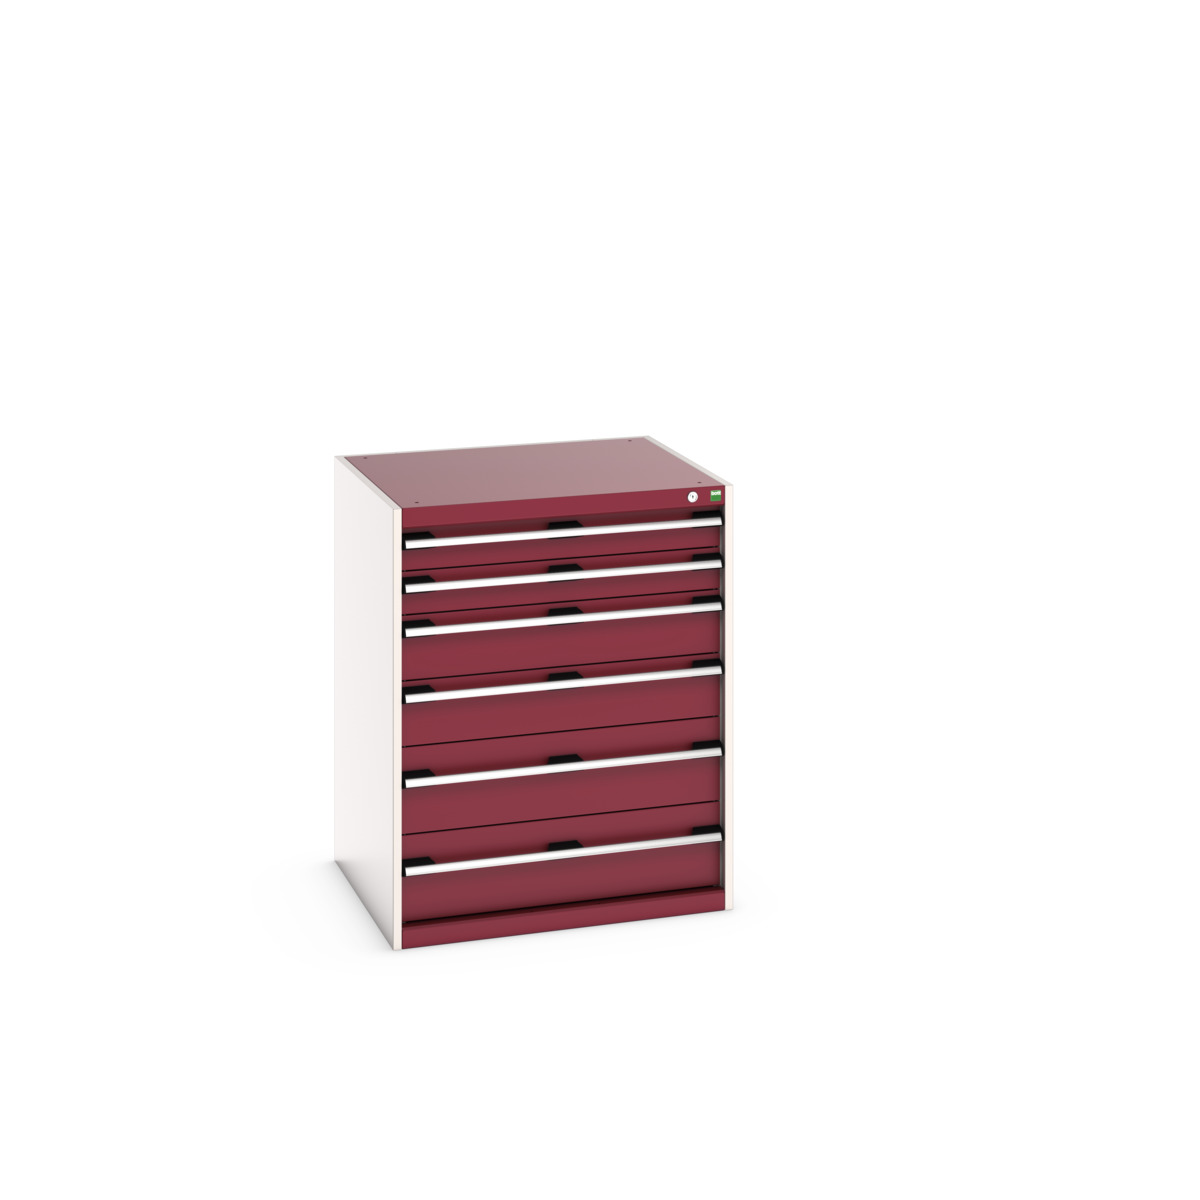 40028019.24V - cubio drawer cabinet